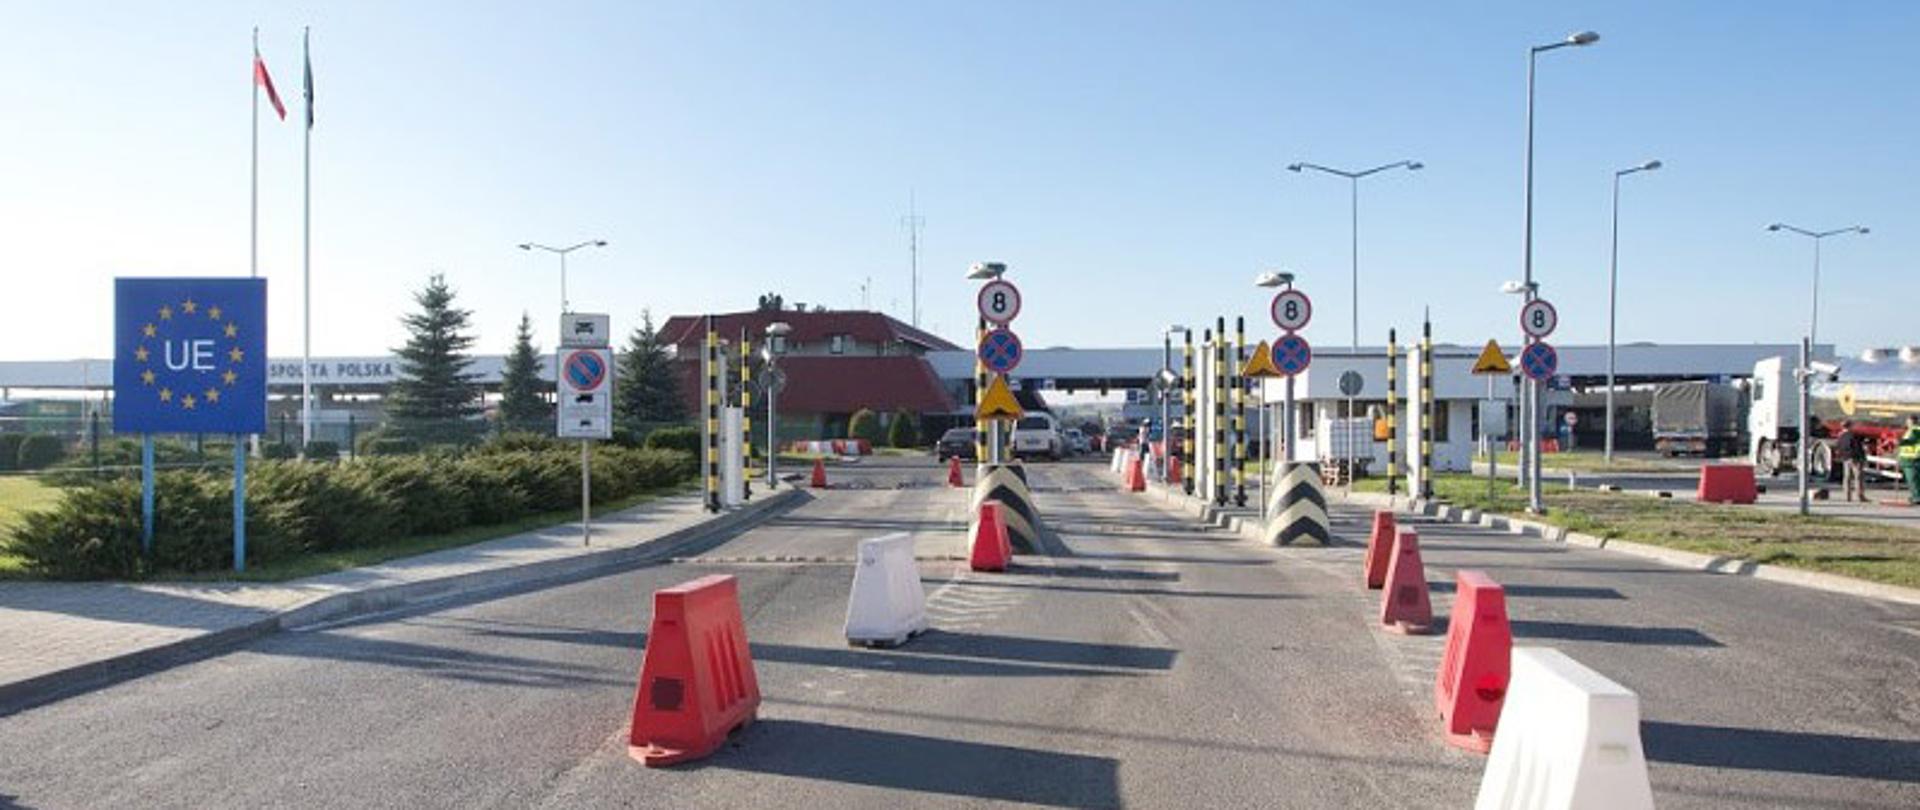 Widok na przejście graniczne w Korczowej, znaki drogowe, odbojniki, po lewej stronie plansza z napisem UE